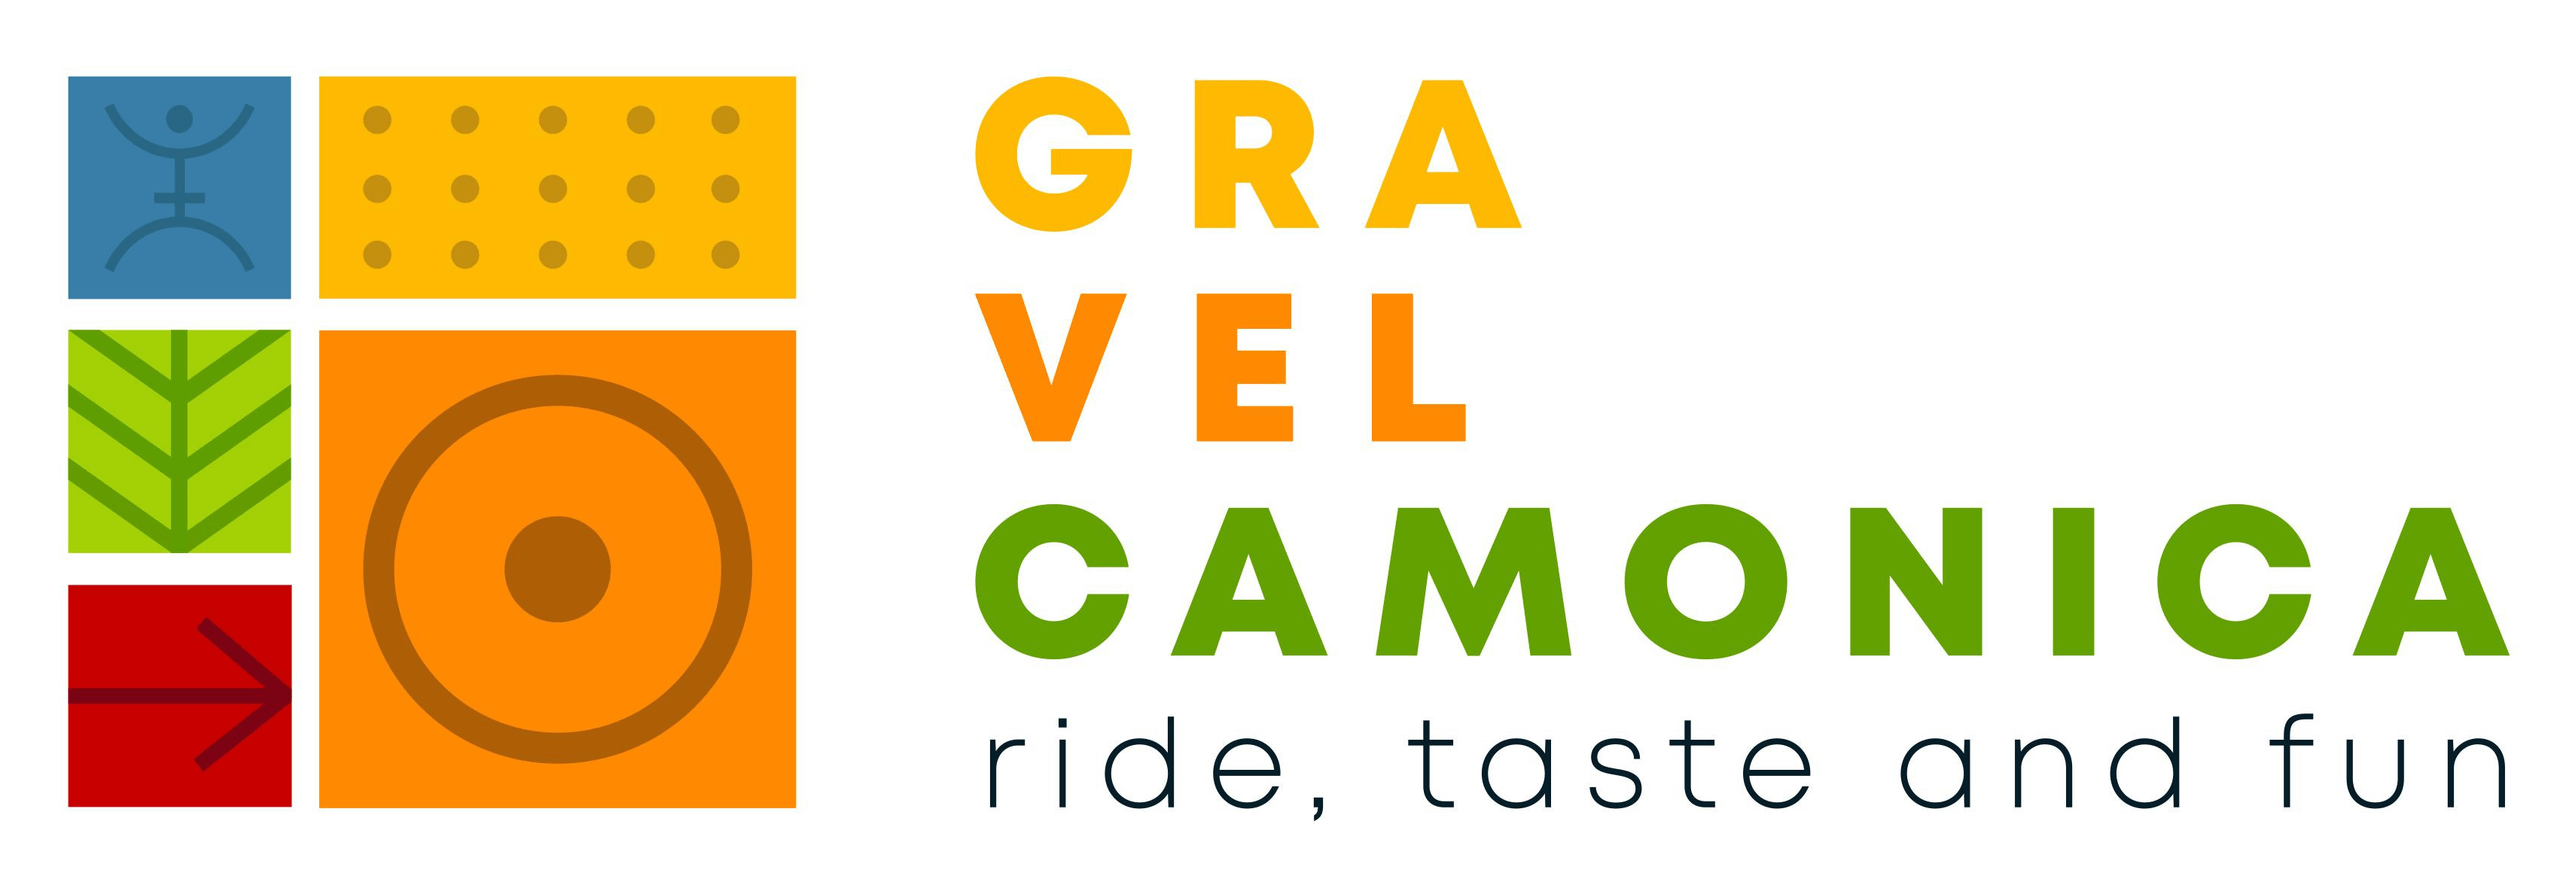 Gravel Camonica